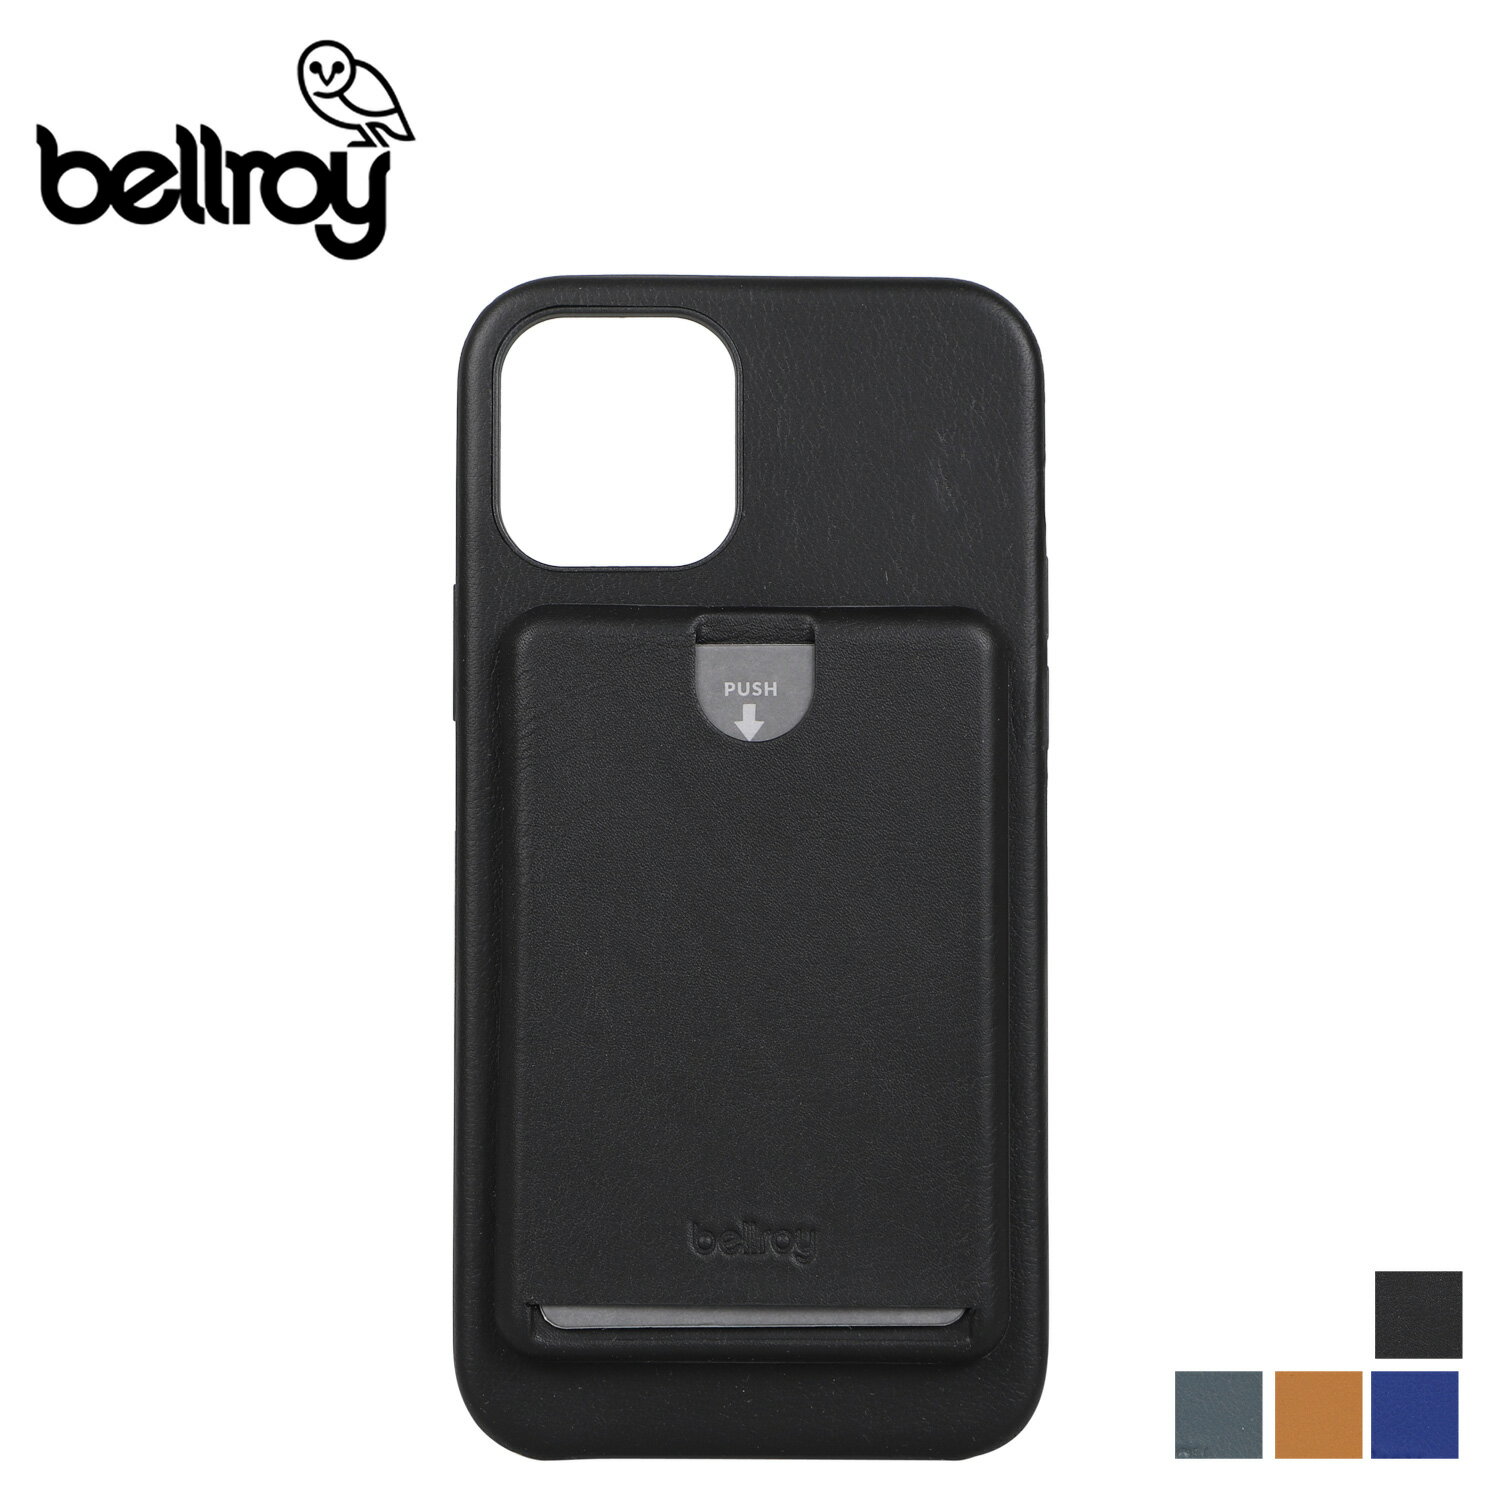 【最大1000円OFFクーポン配布中】 Bellroy ベルロイ iPhone12 12 Pro ケース スマホケース 携帯 アイフォン メンズ レディース 背面ポケット PHONE CASE ブラック グレー ブラウン 黒 PMXA